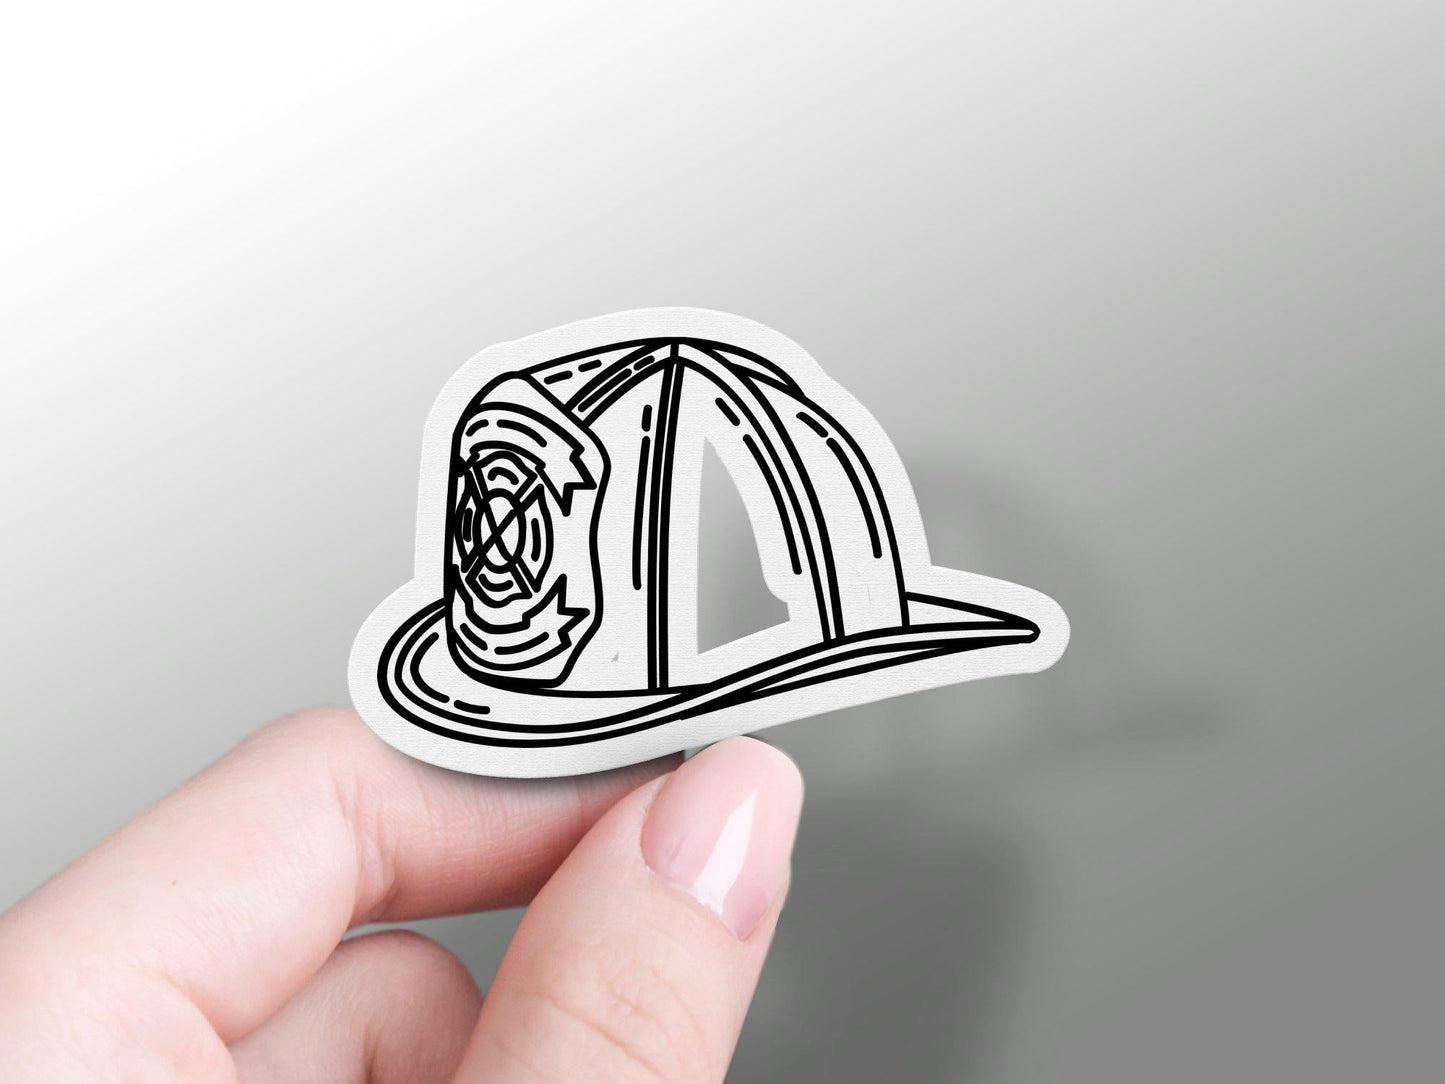 Firefighter Helmet Black and White Sticker